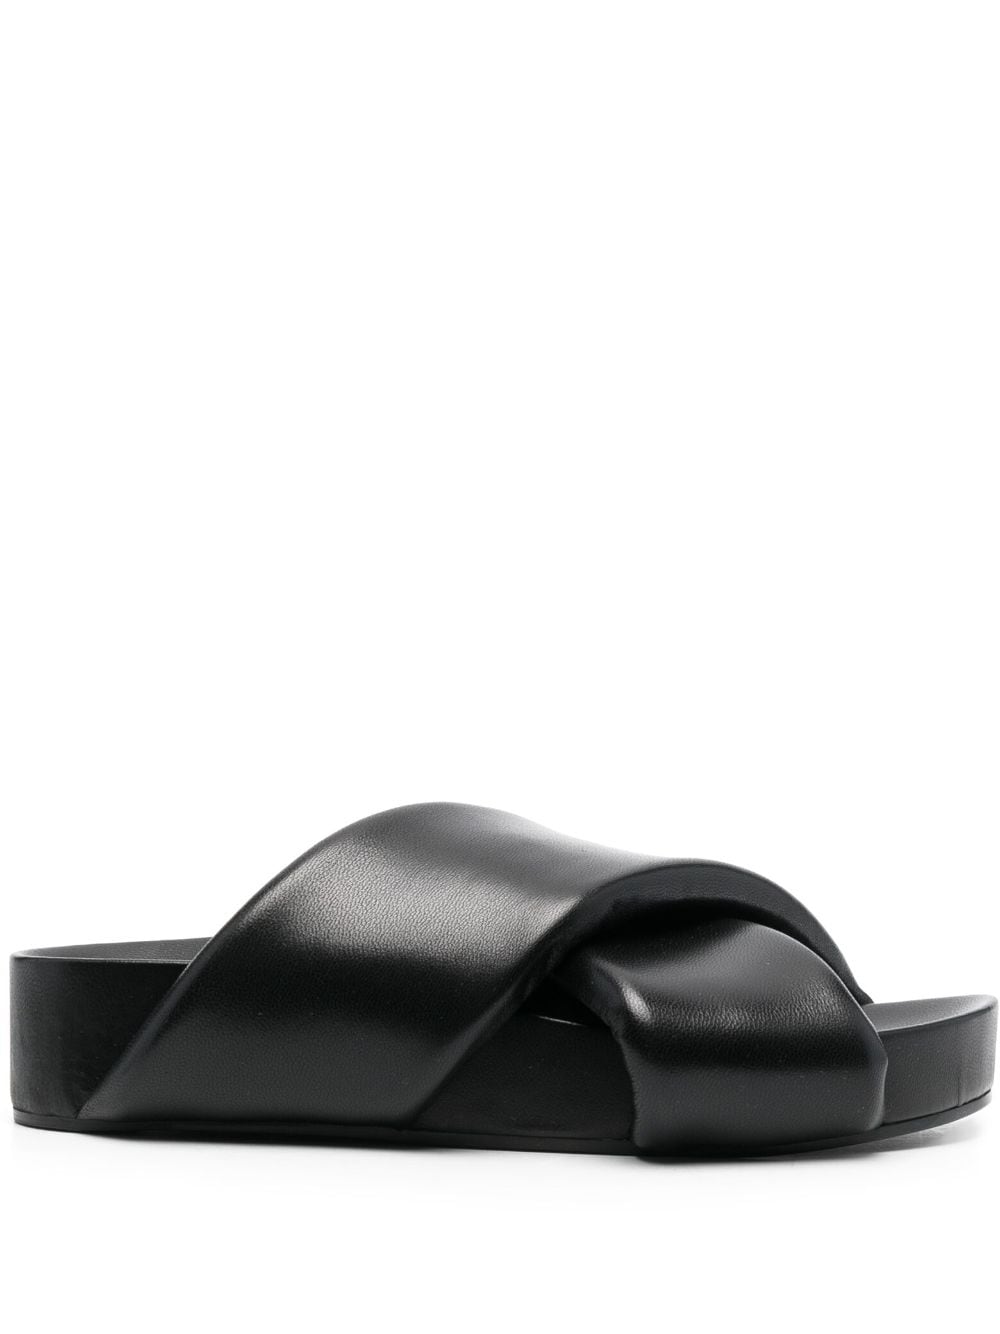 Jil Sander cross-over leather sandals - Black von Jil Sander